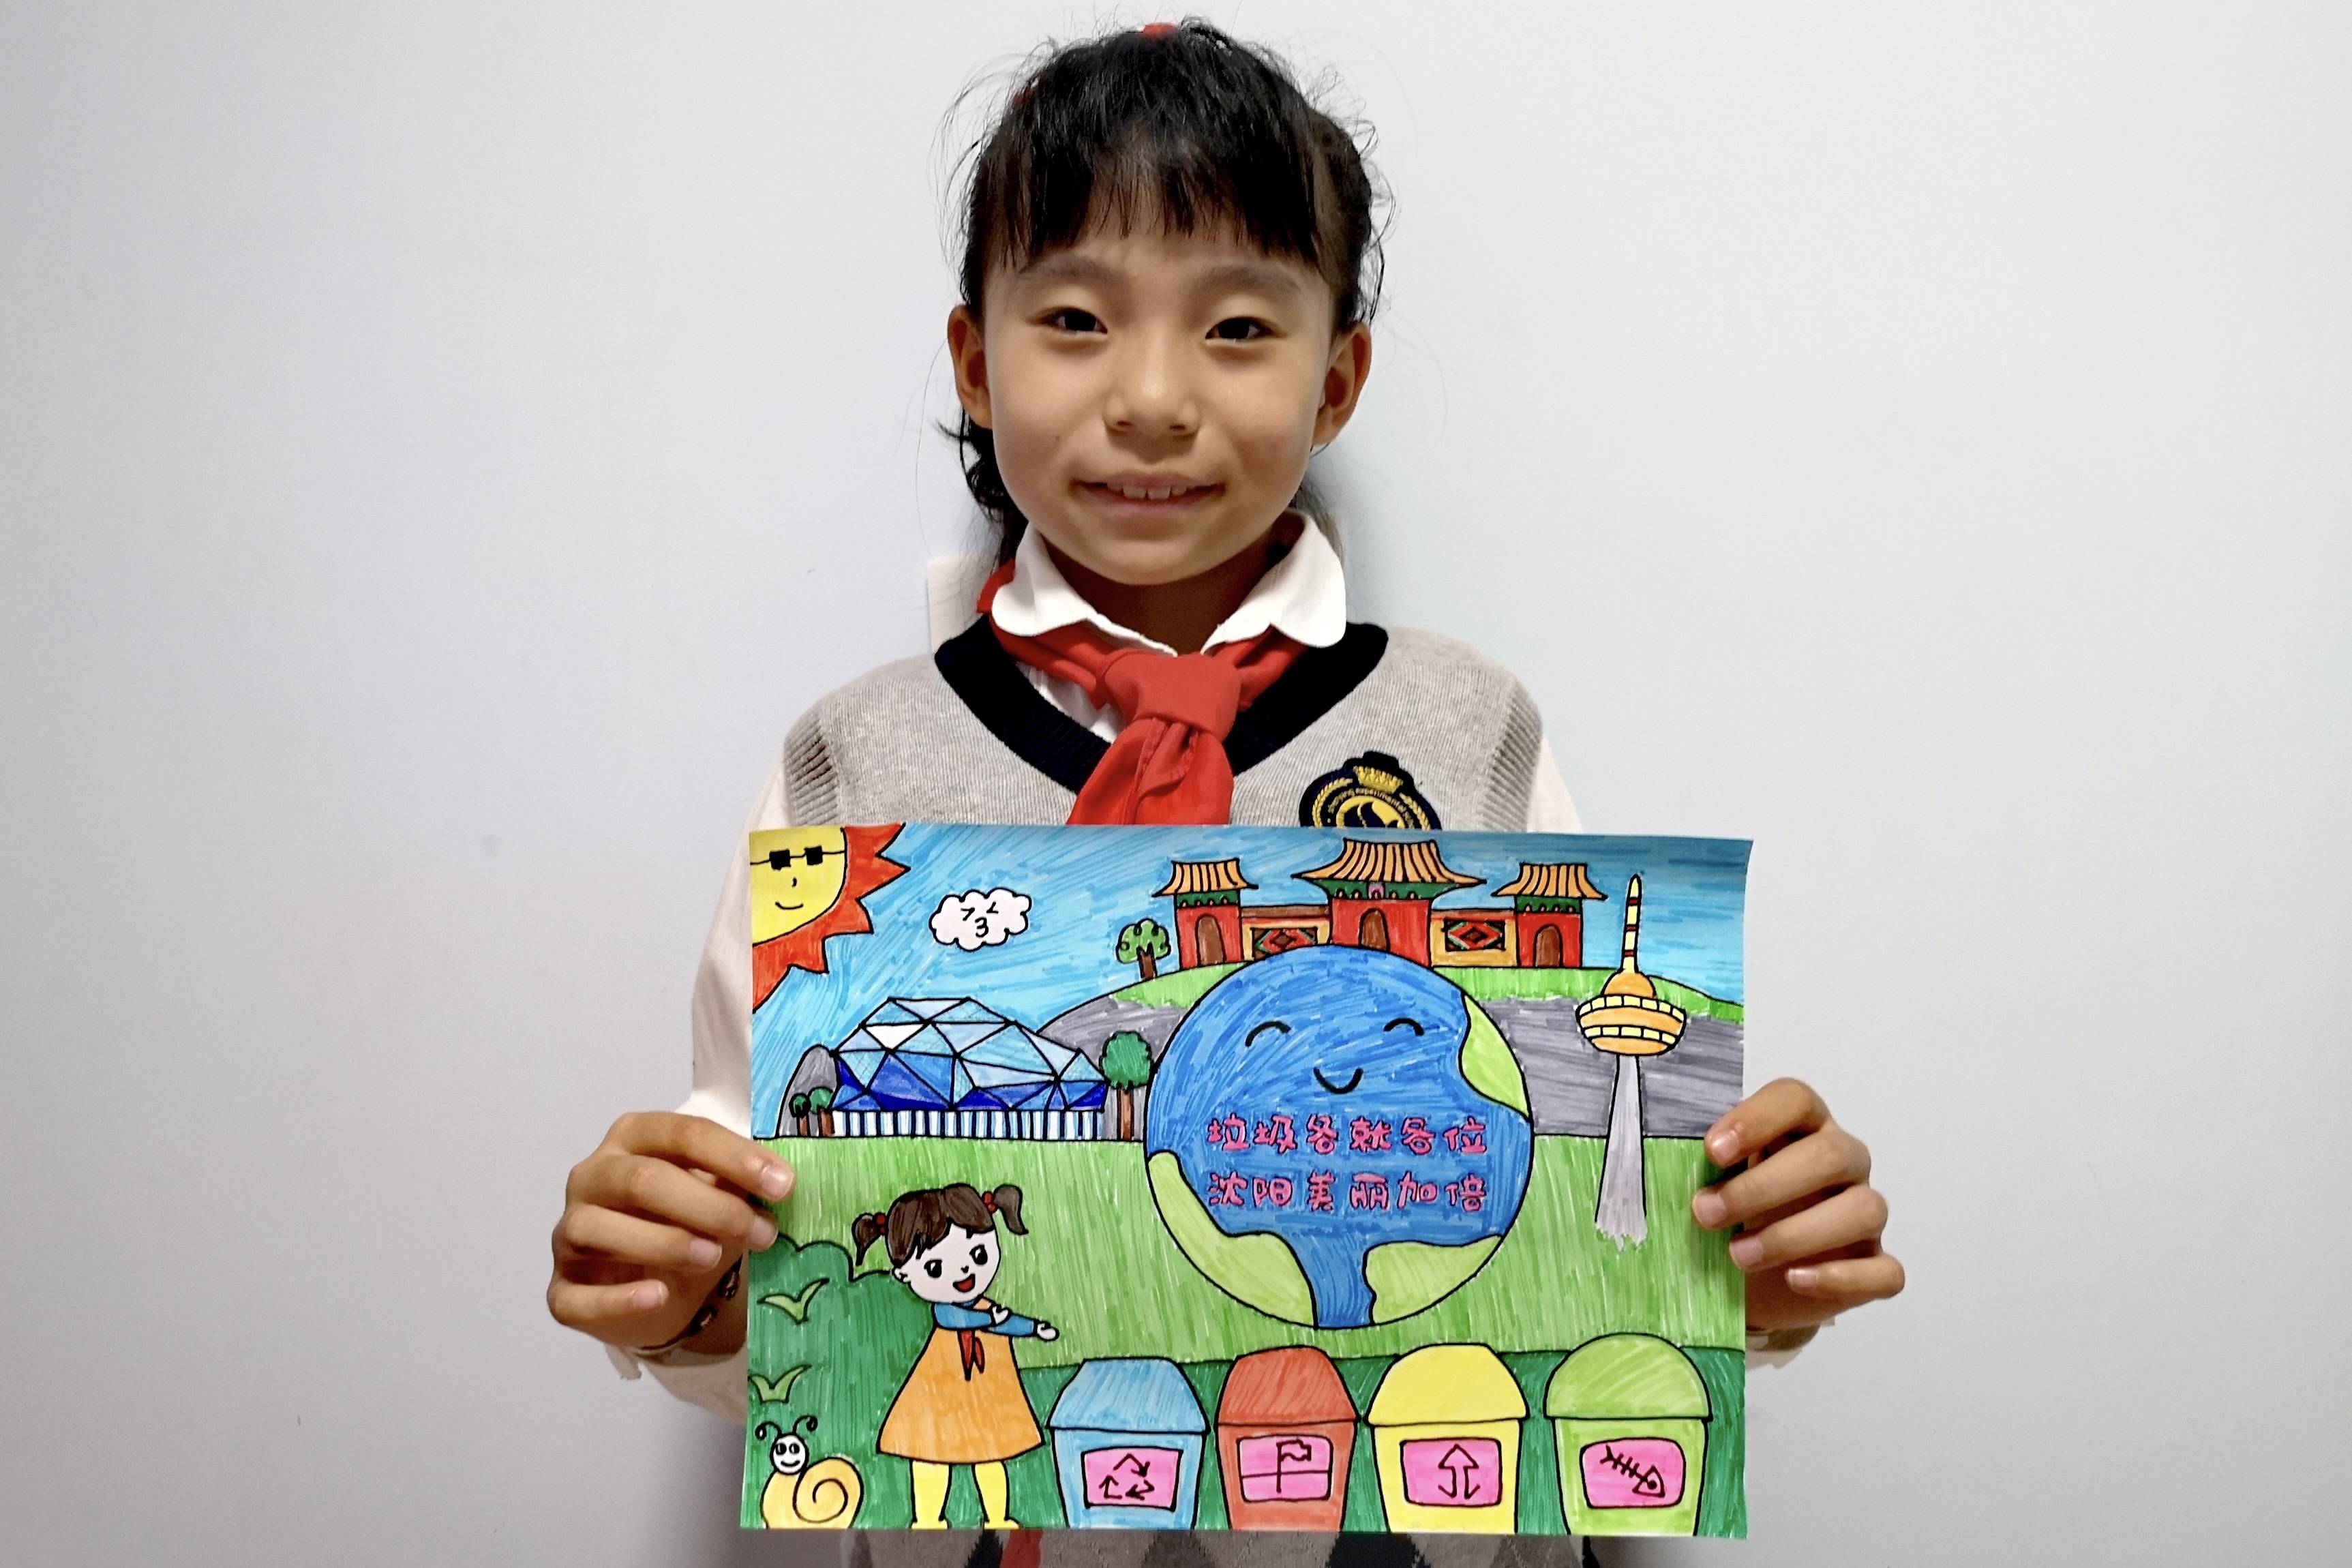 沈阳小学生垃圾分类绘画作品展示(24-47幅)